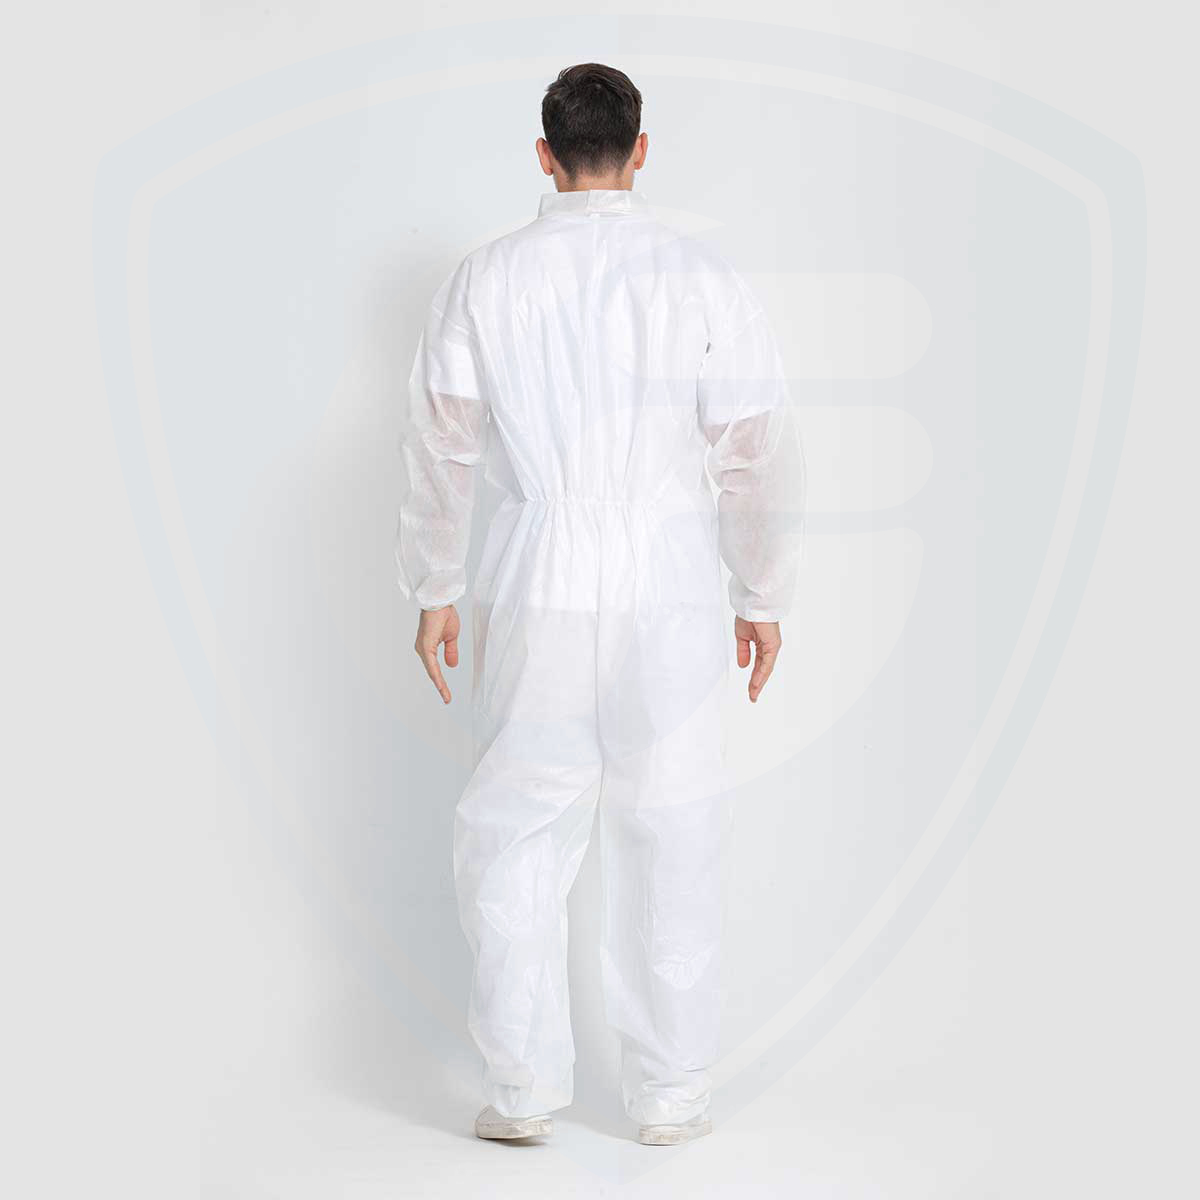 Overol desechable antiestático de seguridad industrial no tejido PP+PE blanco sin capucha